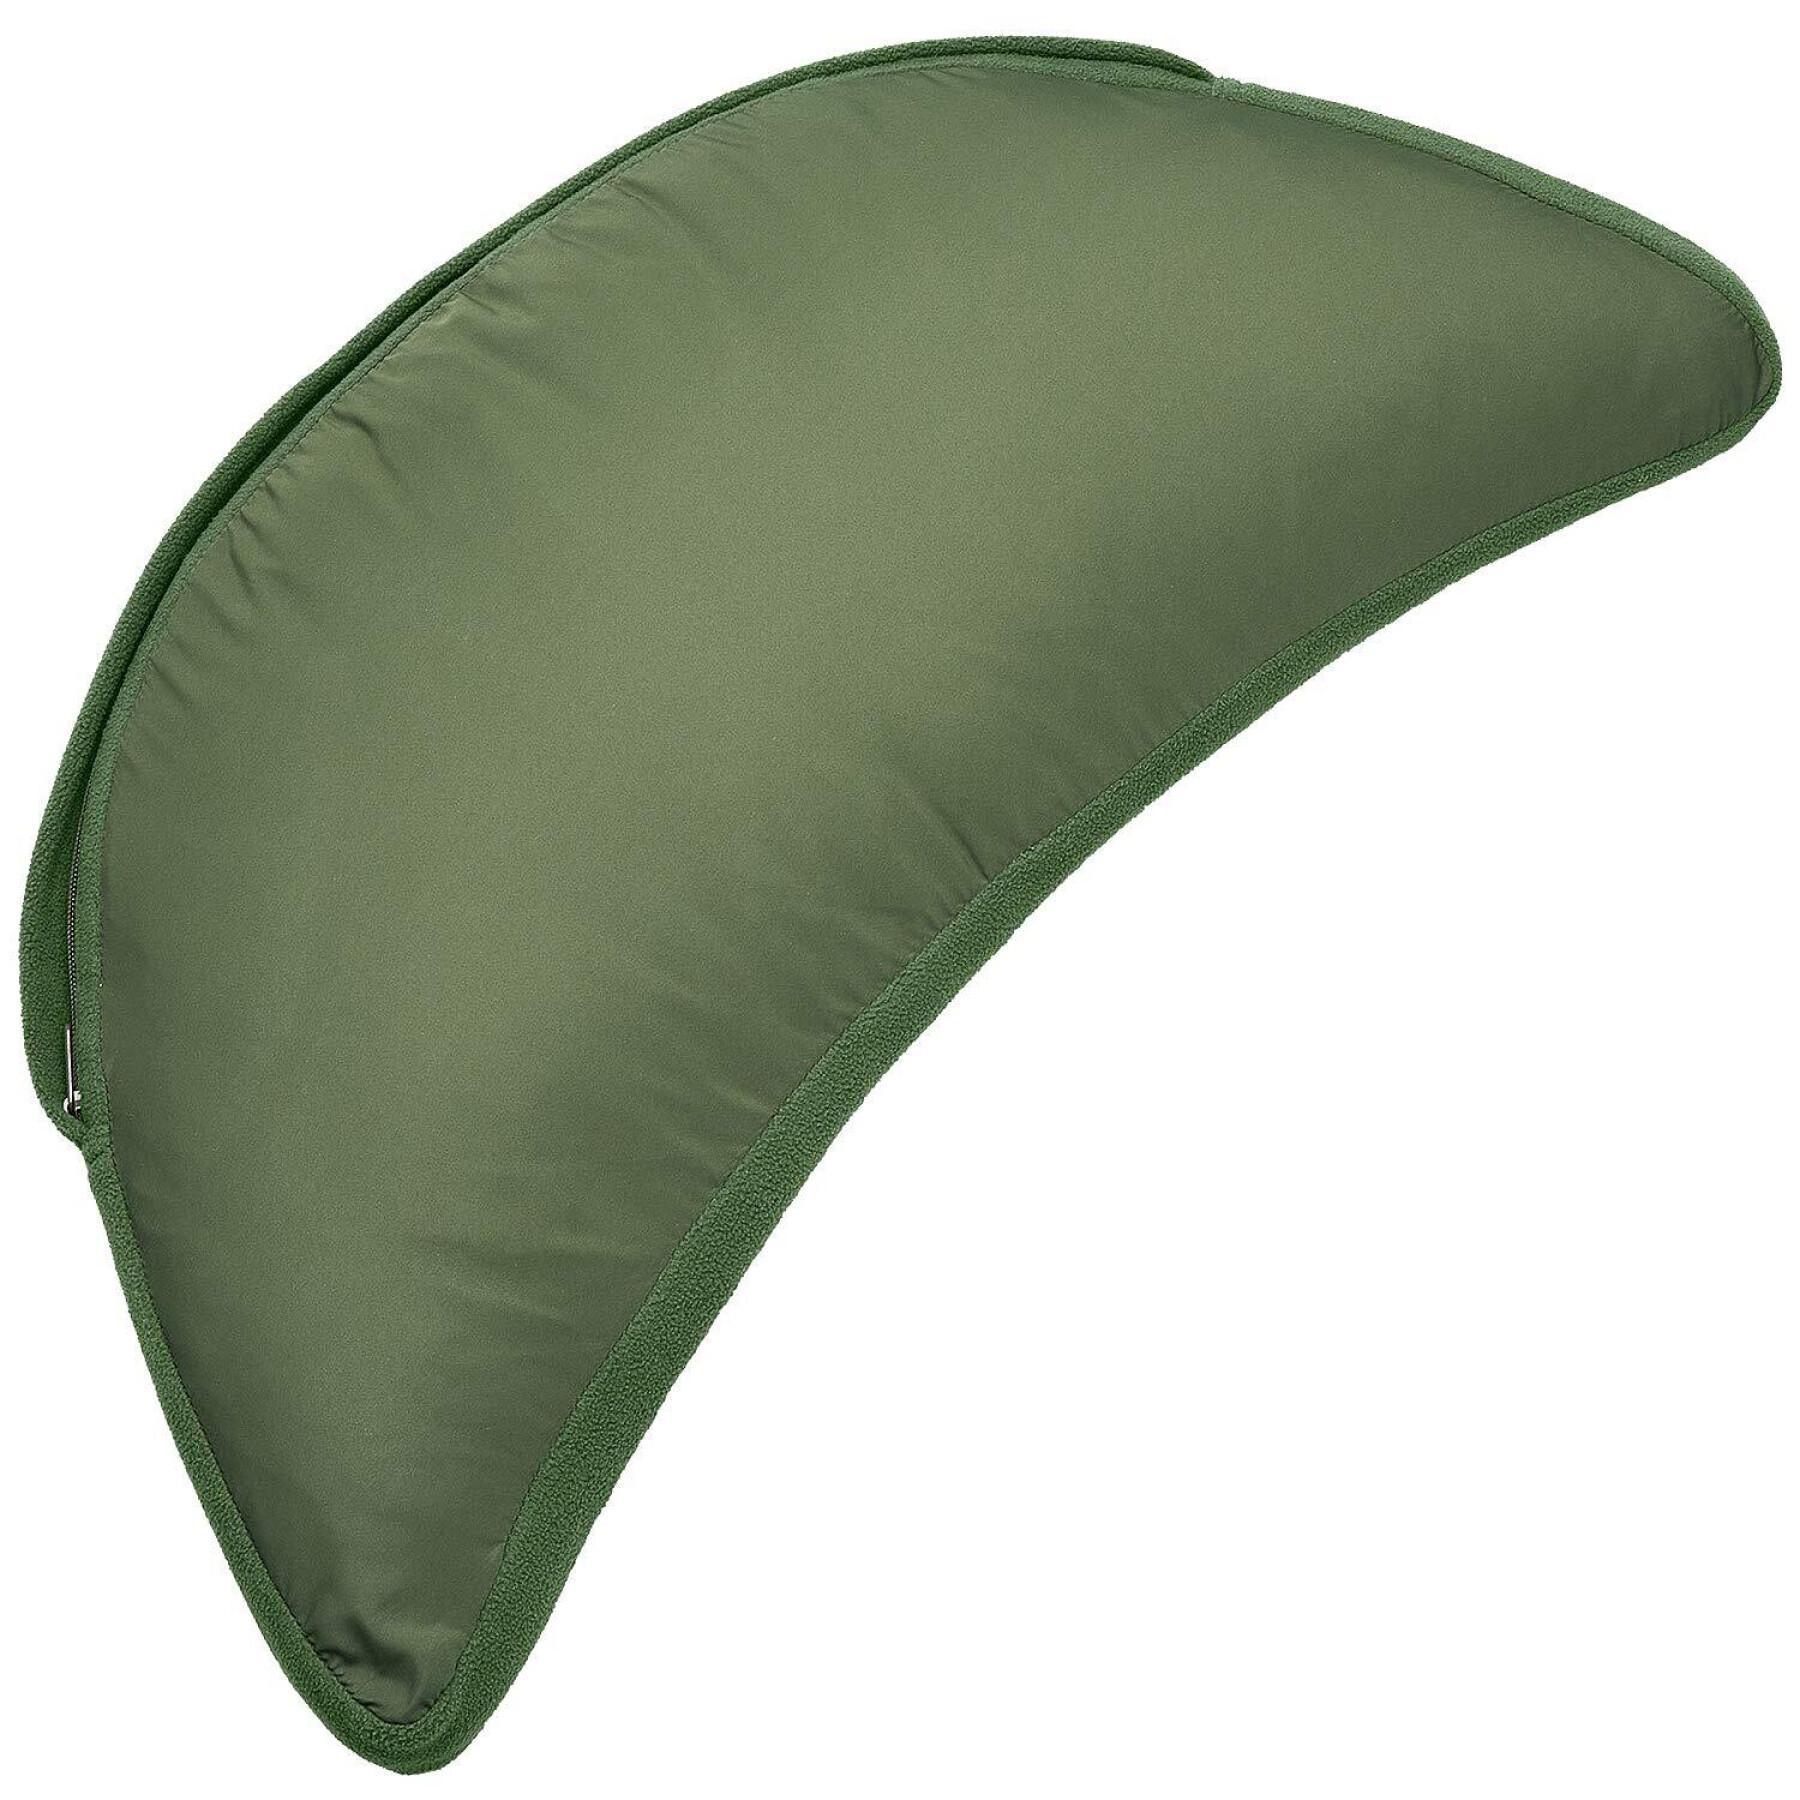 Pillow Trakker Oval Pillow